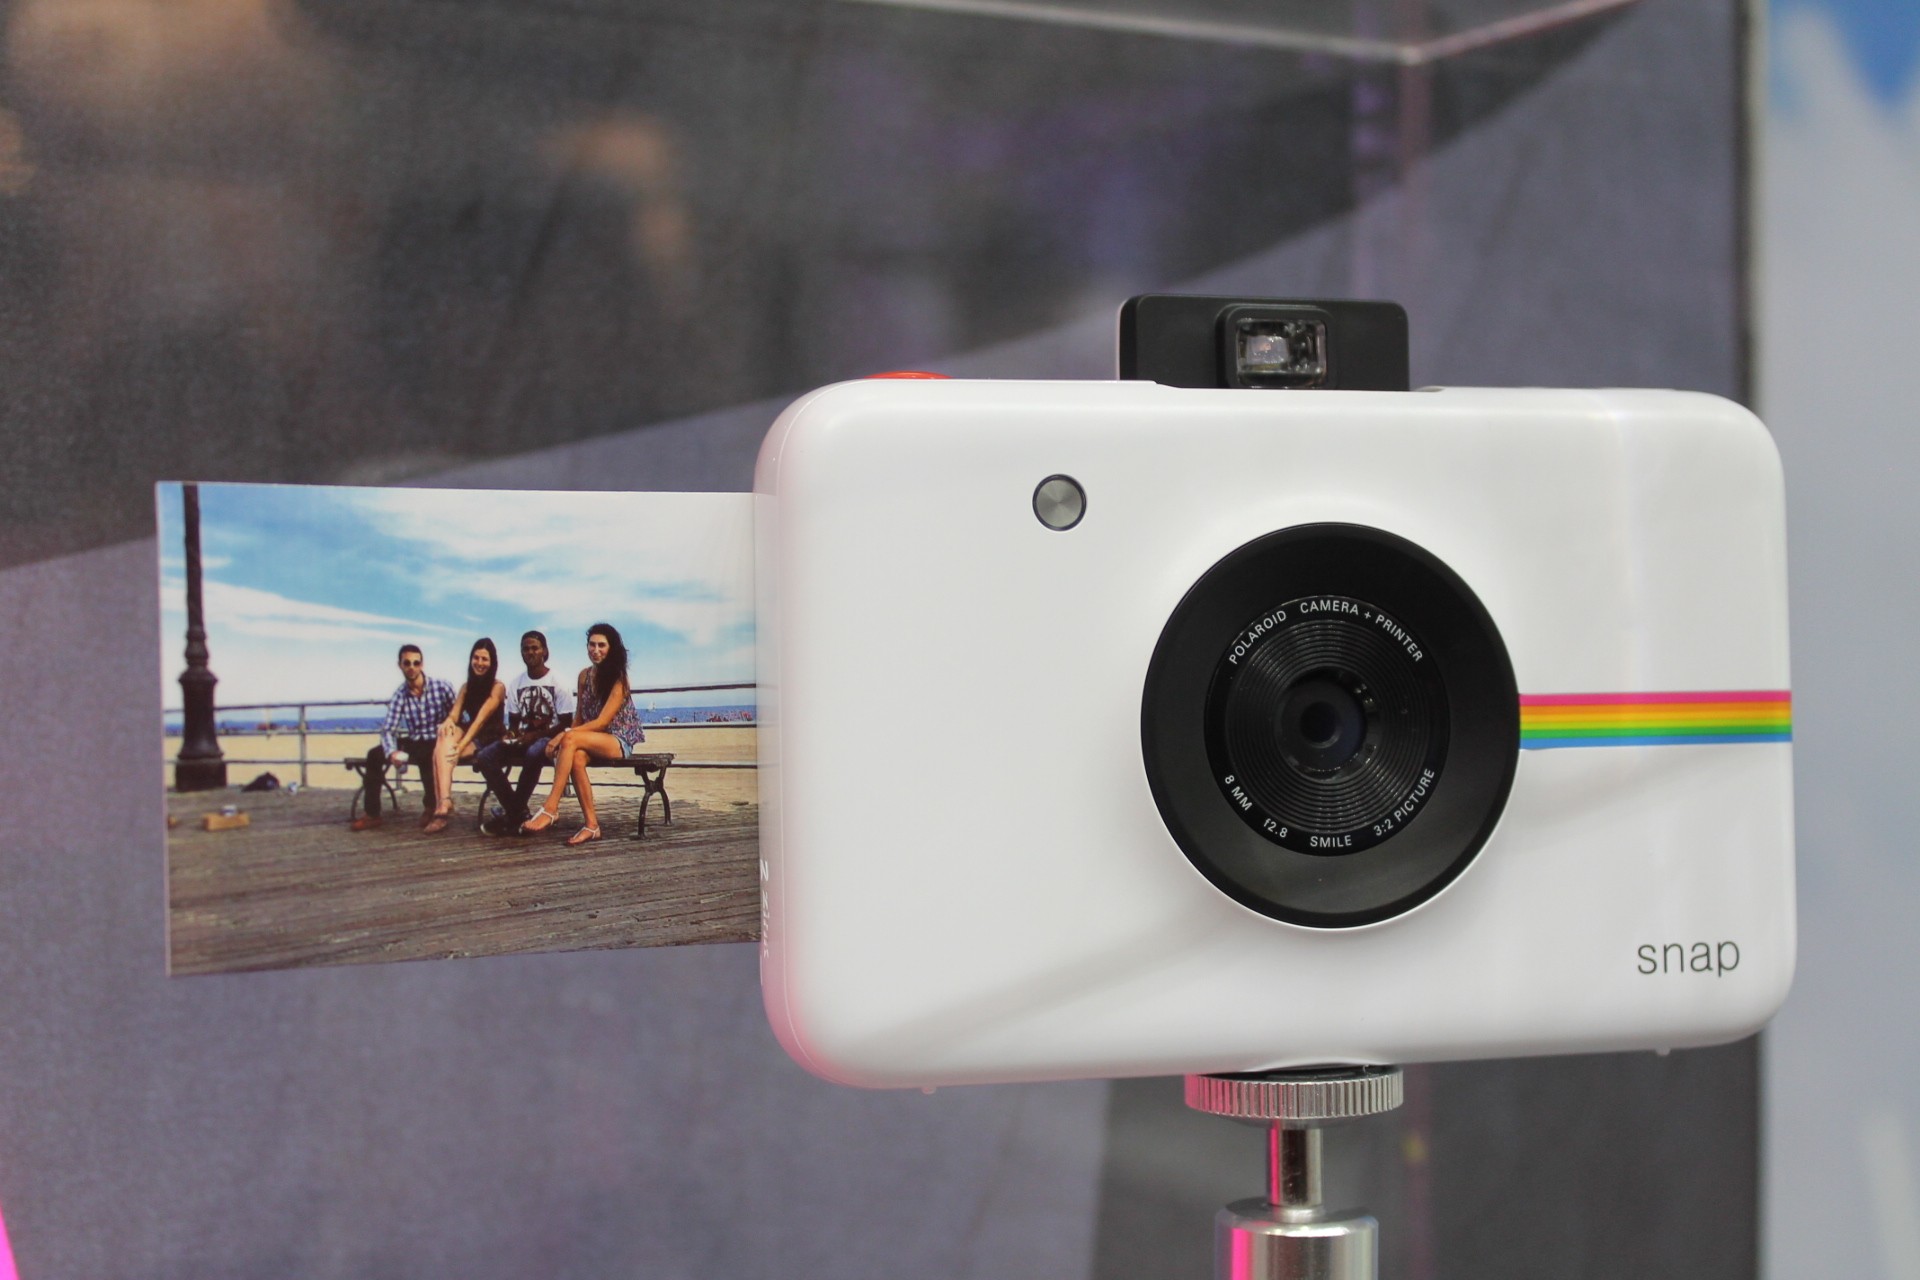 Accidentalmente Indiferencia perrito Polaroid Snap fotocamera instant digitale: videoanteprima da HDblog -  HDblog.it